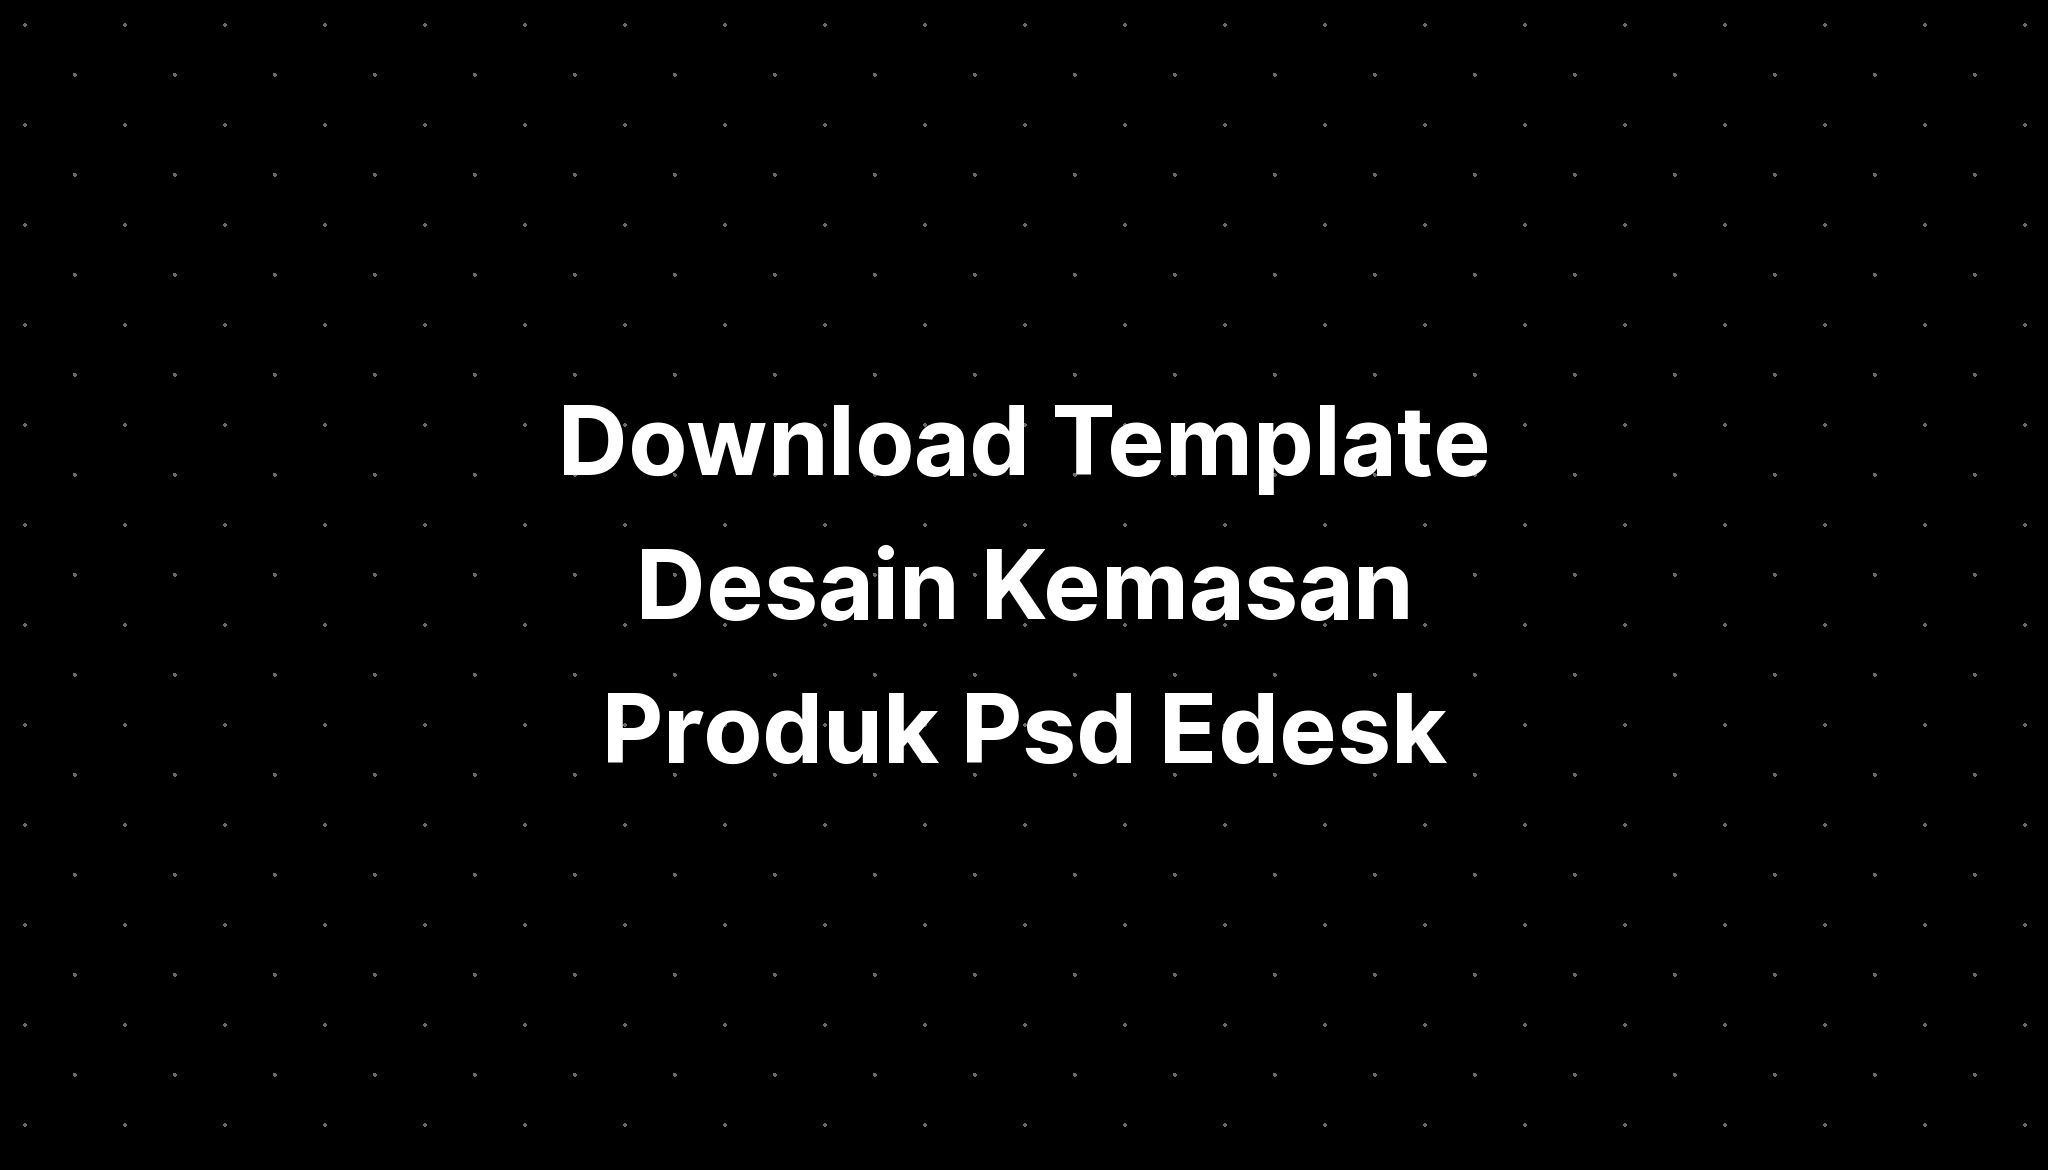 download template download template desain kemasan produk psd
